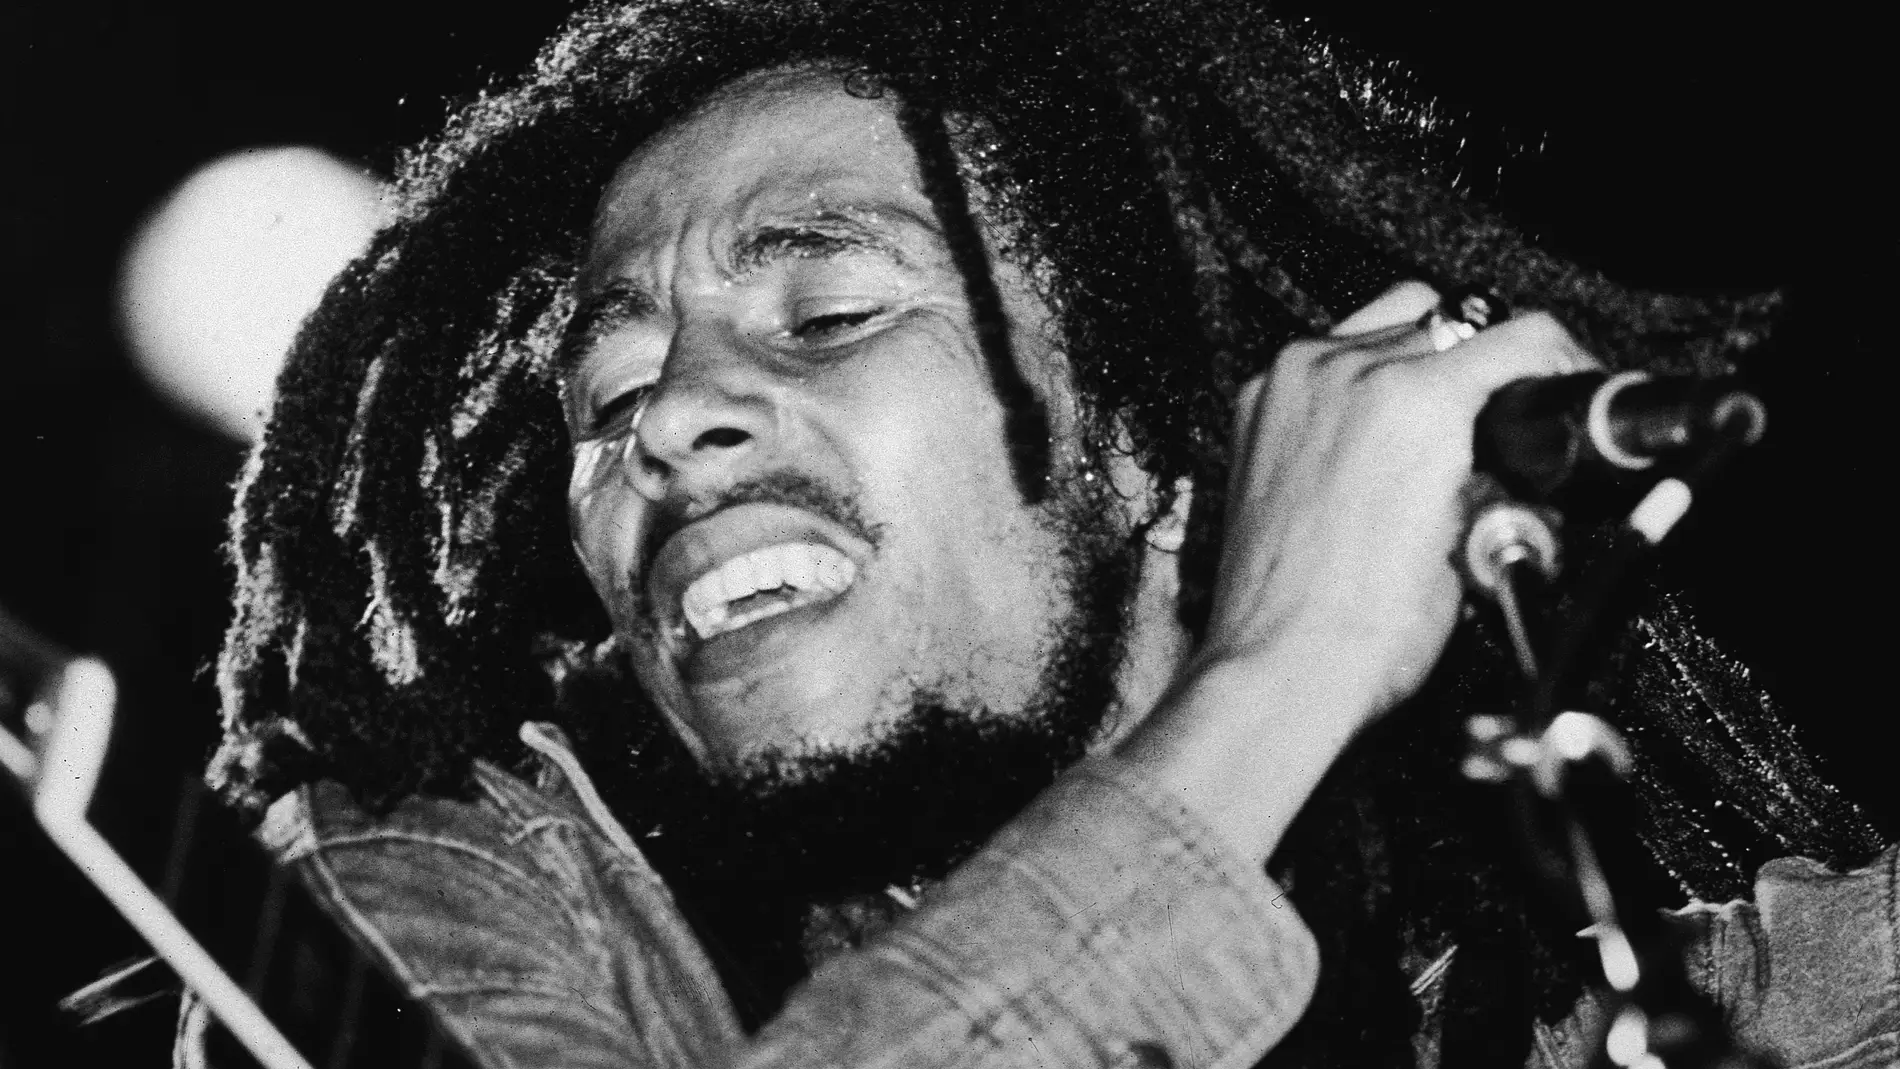 Bob Marley, durante un concierto